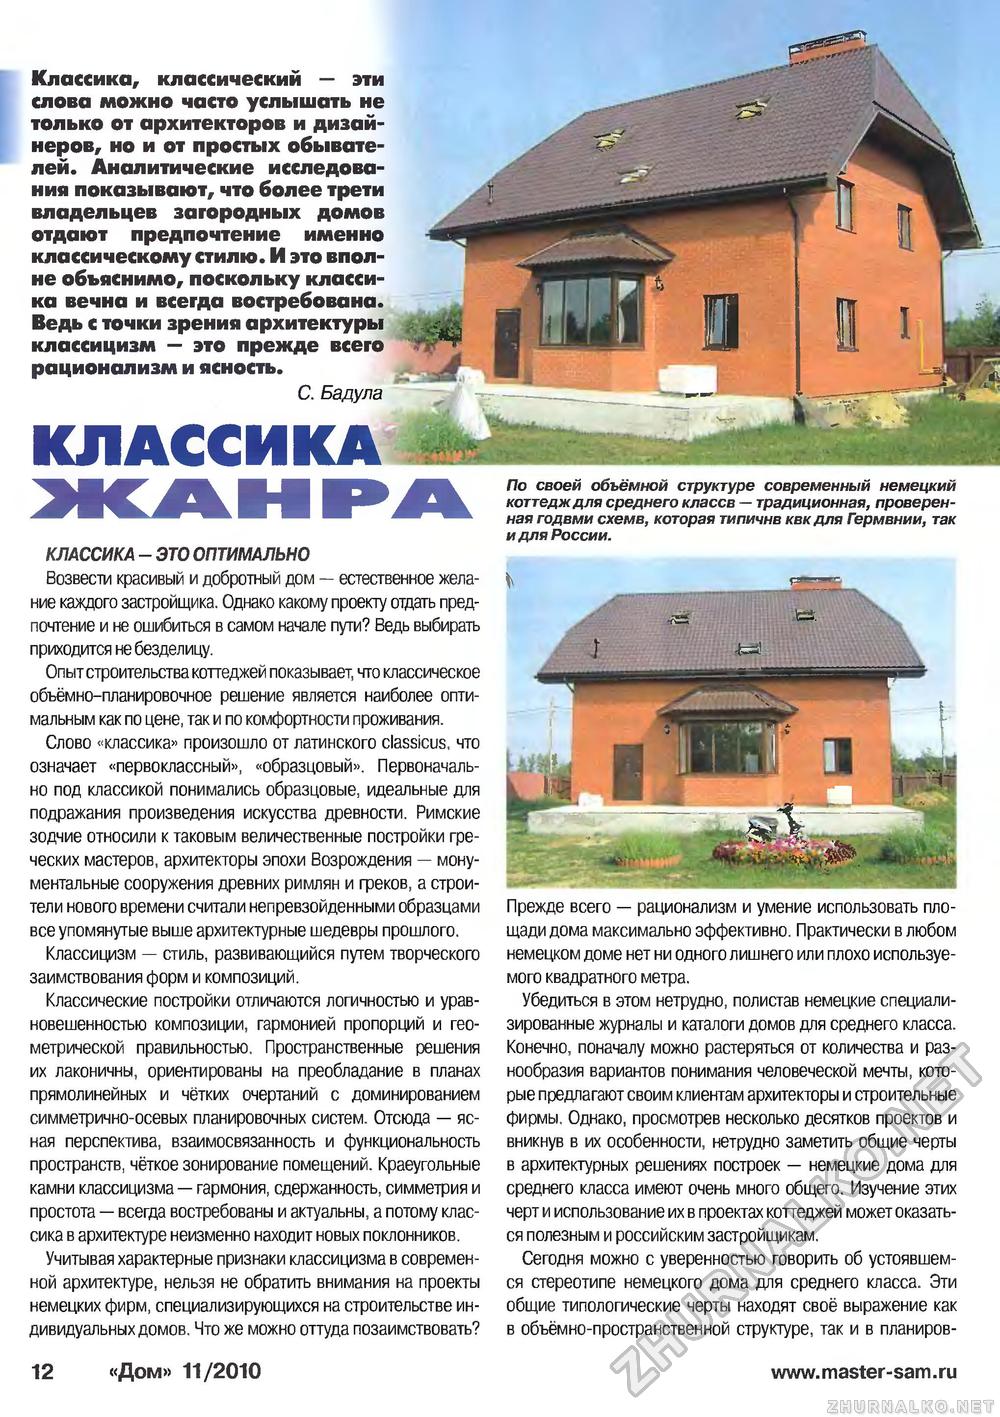 Дом 2010-11, страница 12